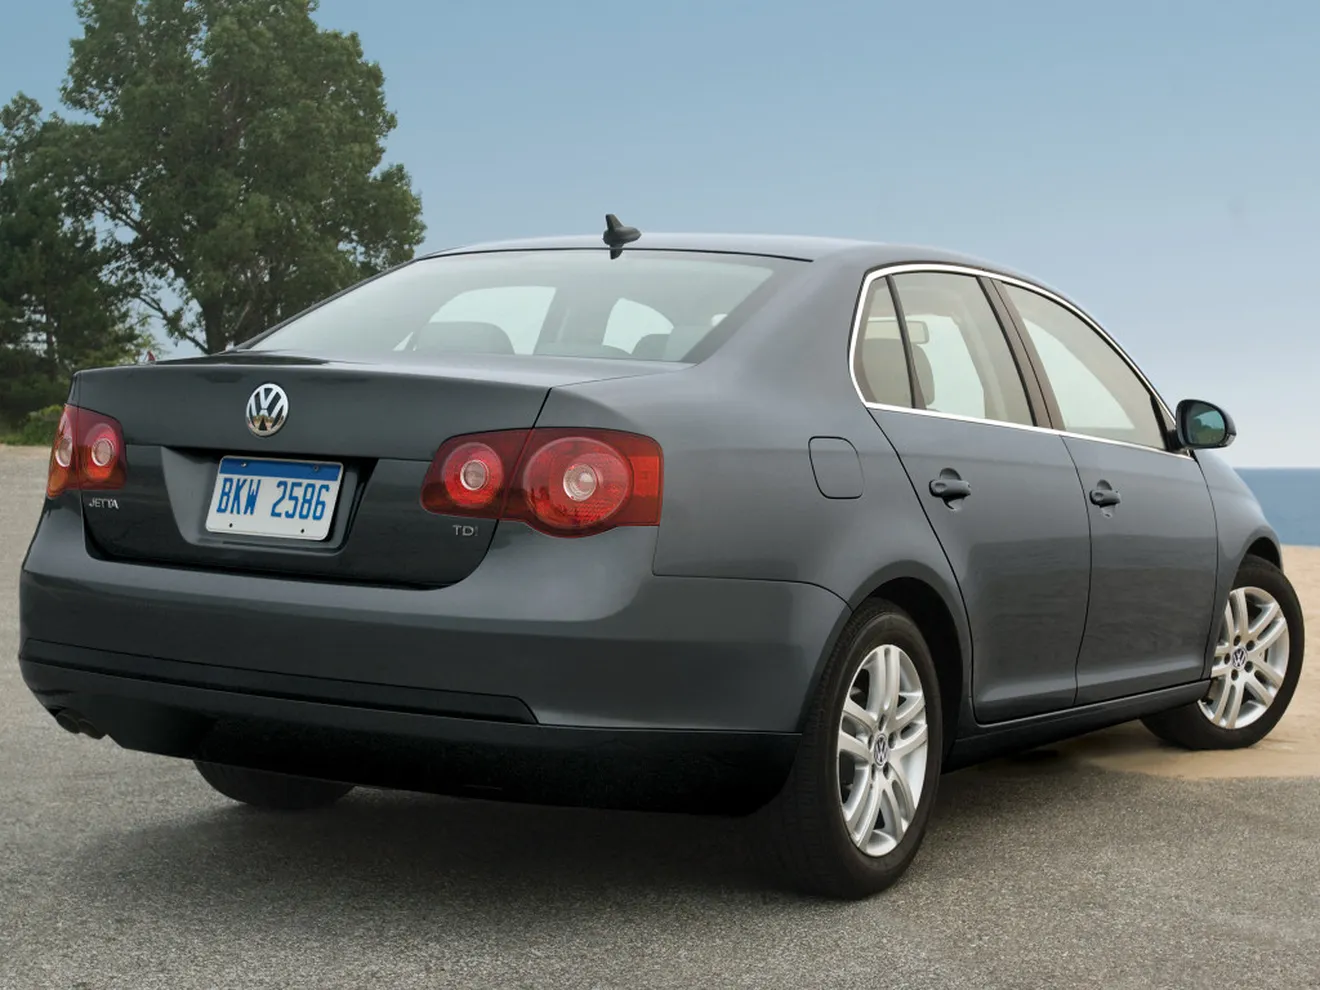 Volkswagen ultima un acuerdo por el #Dieselgate en EEUU